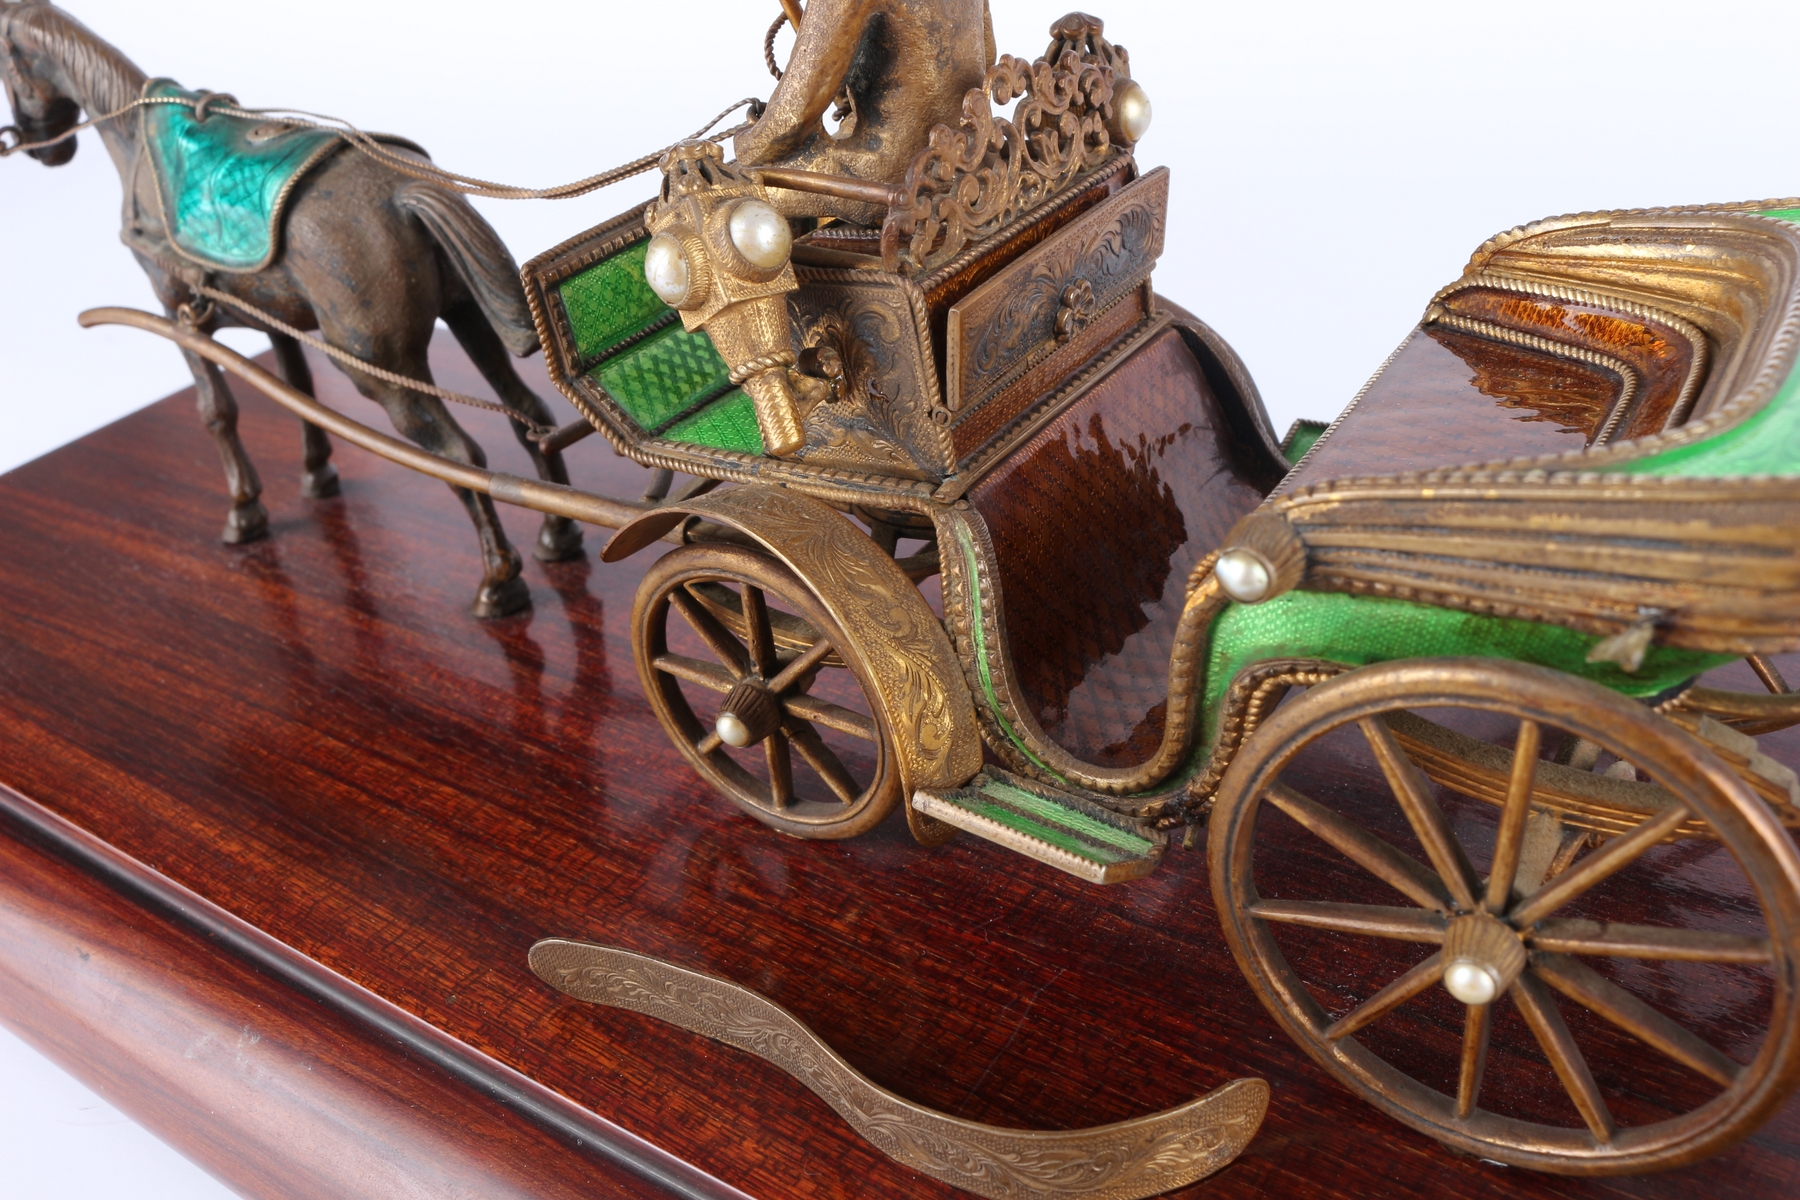 Wiener Pferdekutsche, horse carriage, - Image 6 of 6